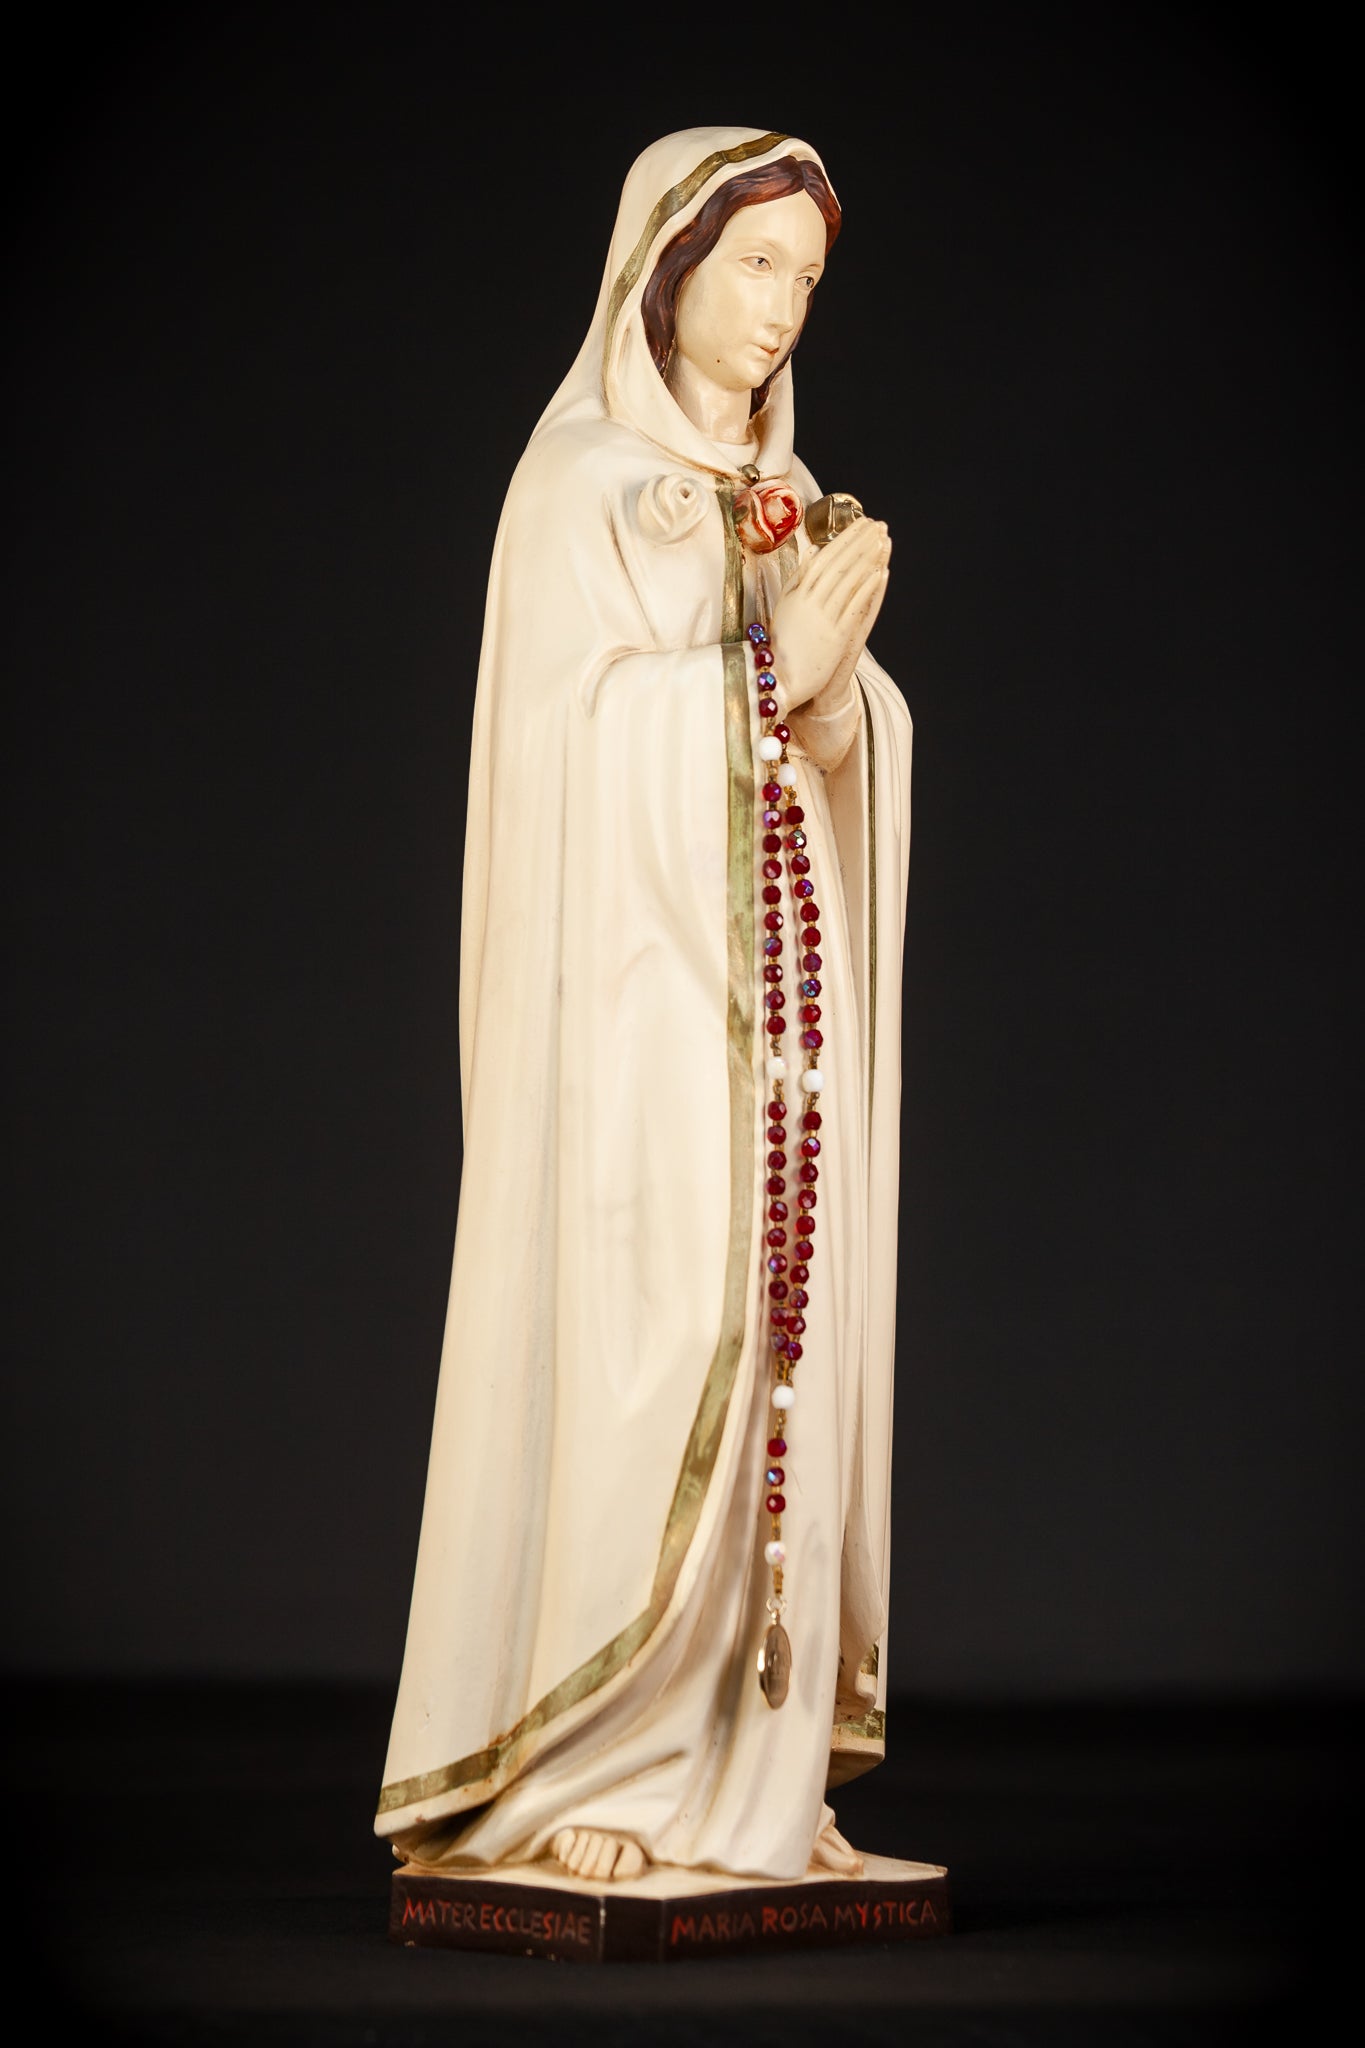 Maria Rosa Mystica Wooden Statue | 18.9" / 48 cm